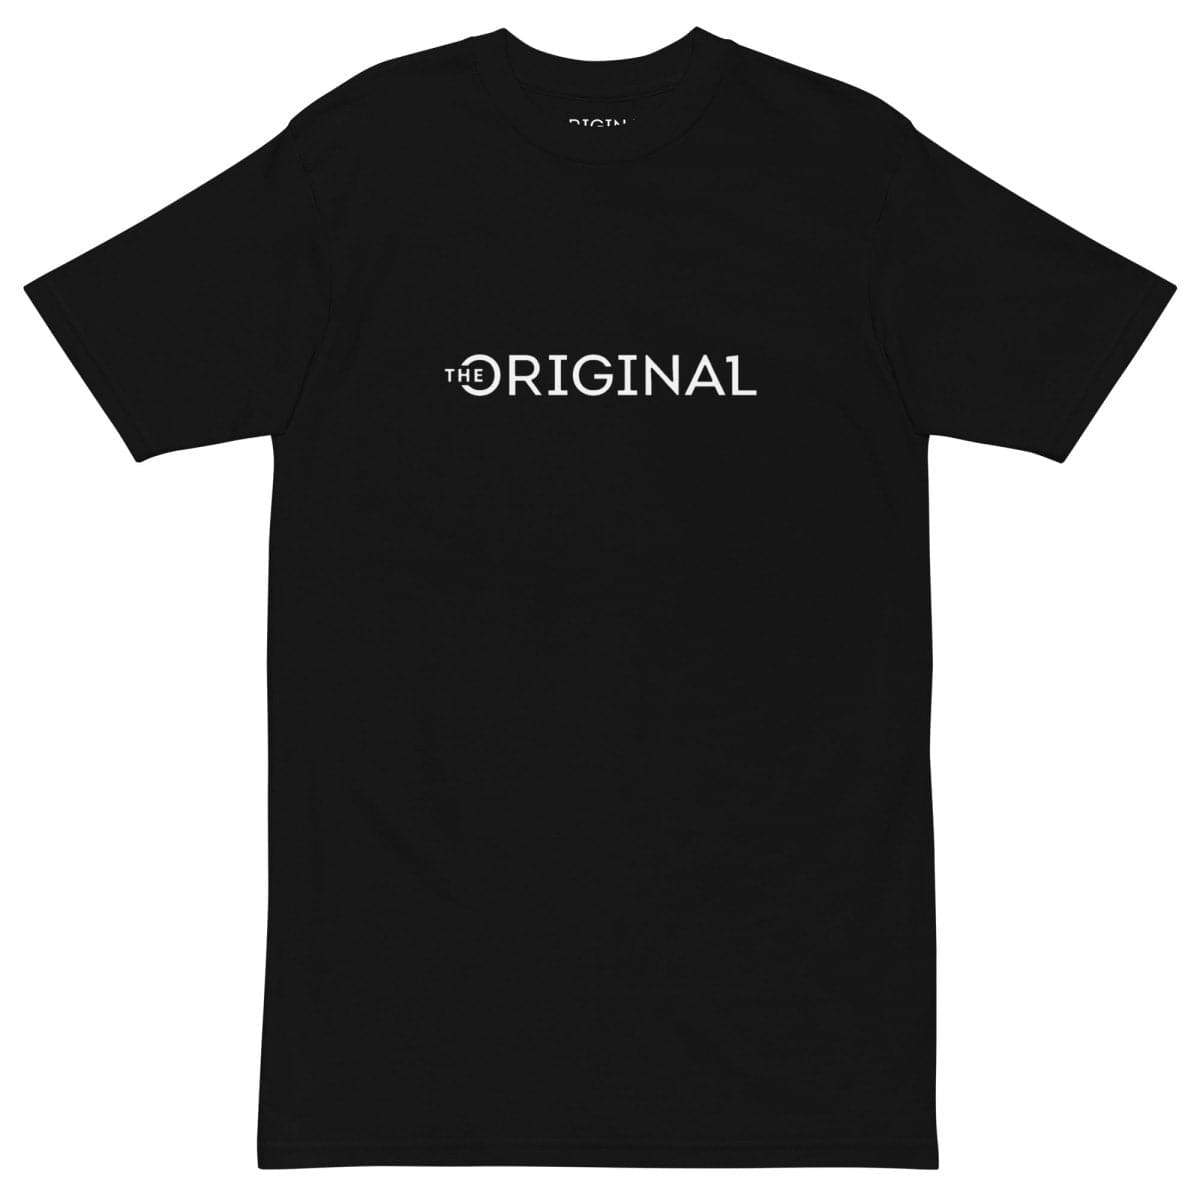 The Original One Heavyweight T-shirt | The Original One